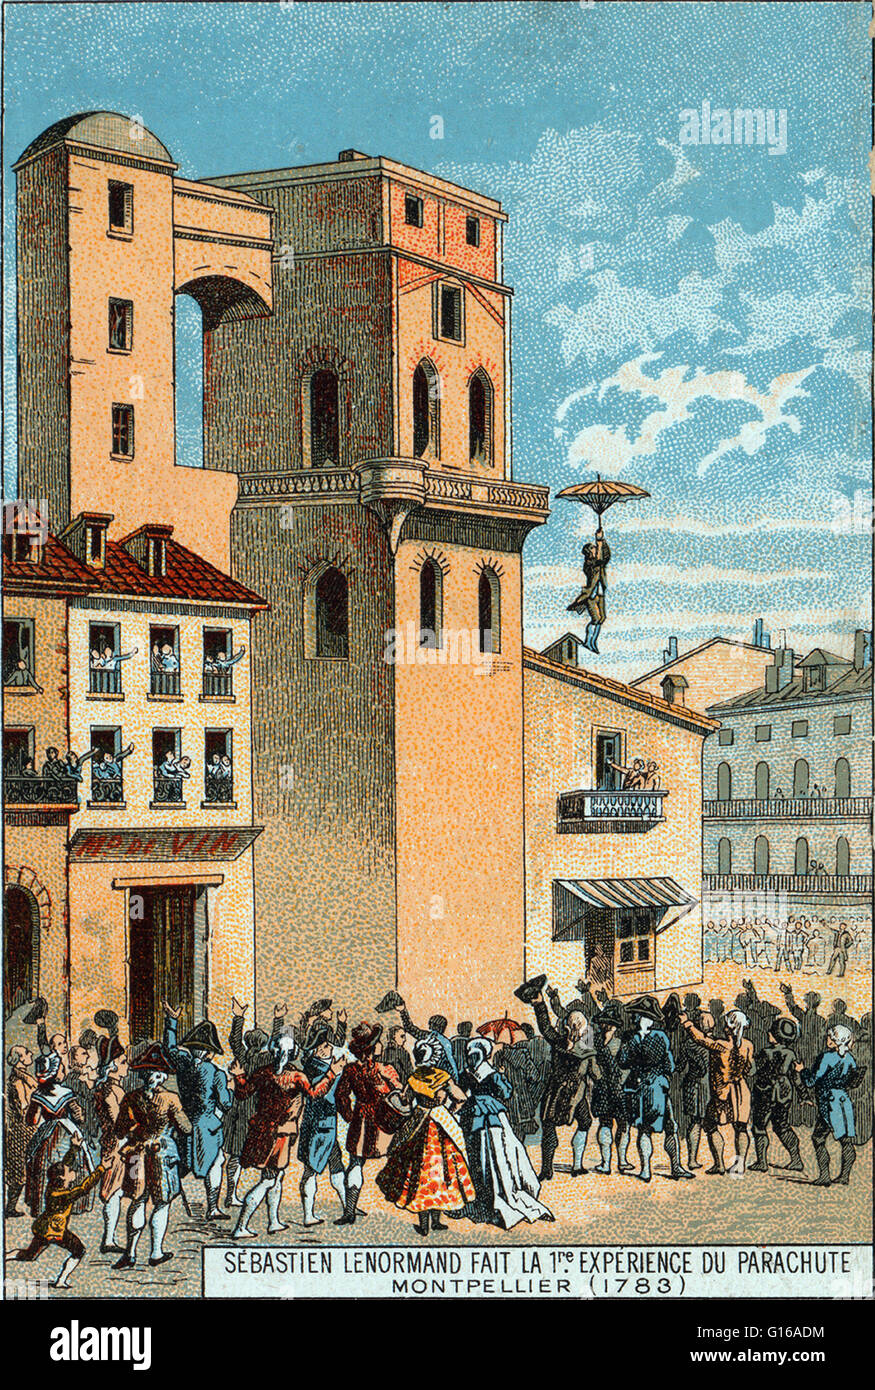 Lenormand salta dalla torre dell'osservatorio di Montpellier, 1783. Lenormand Louis-Sébastien (25 maggio 1757 - Dicembre 1837) fu un fisico francese, inventore e pioniere nel paracadutismo. Egli è considerato il primo uomo a fare un testimone di discesa con un Foto Stock